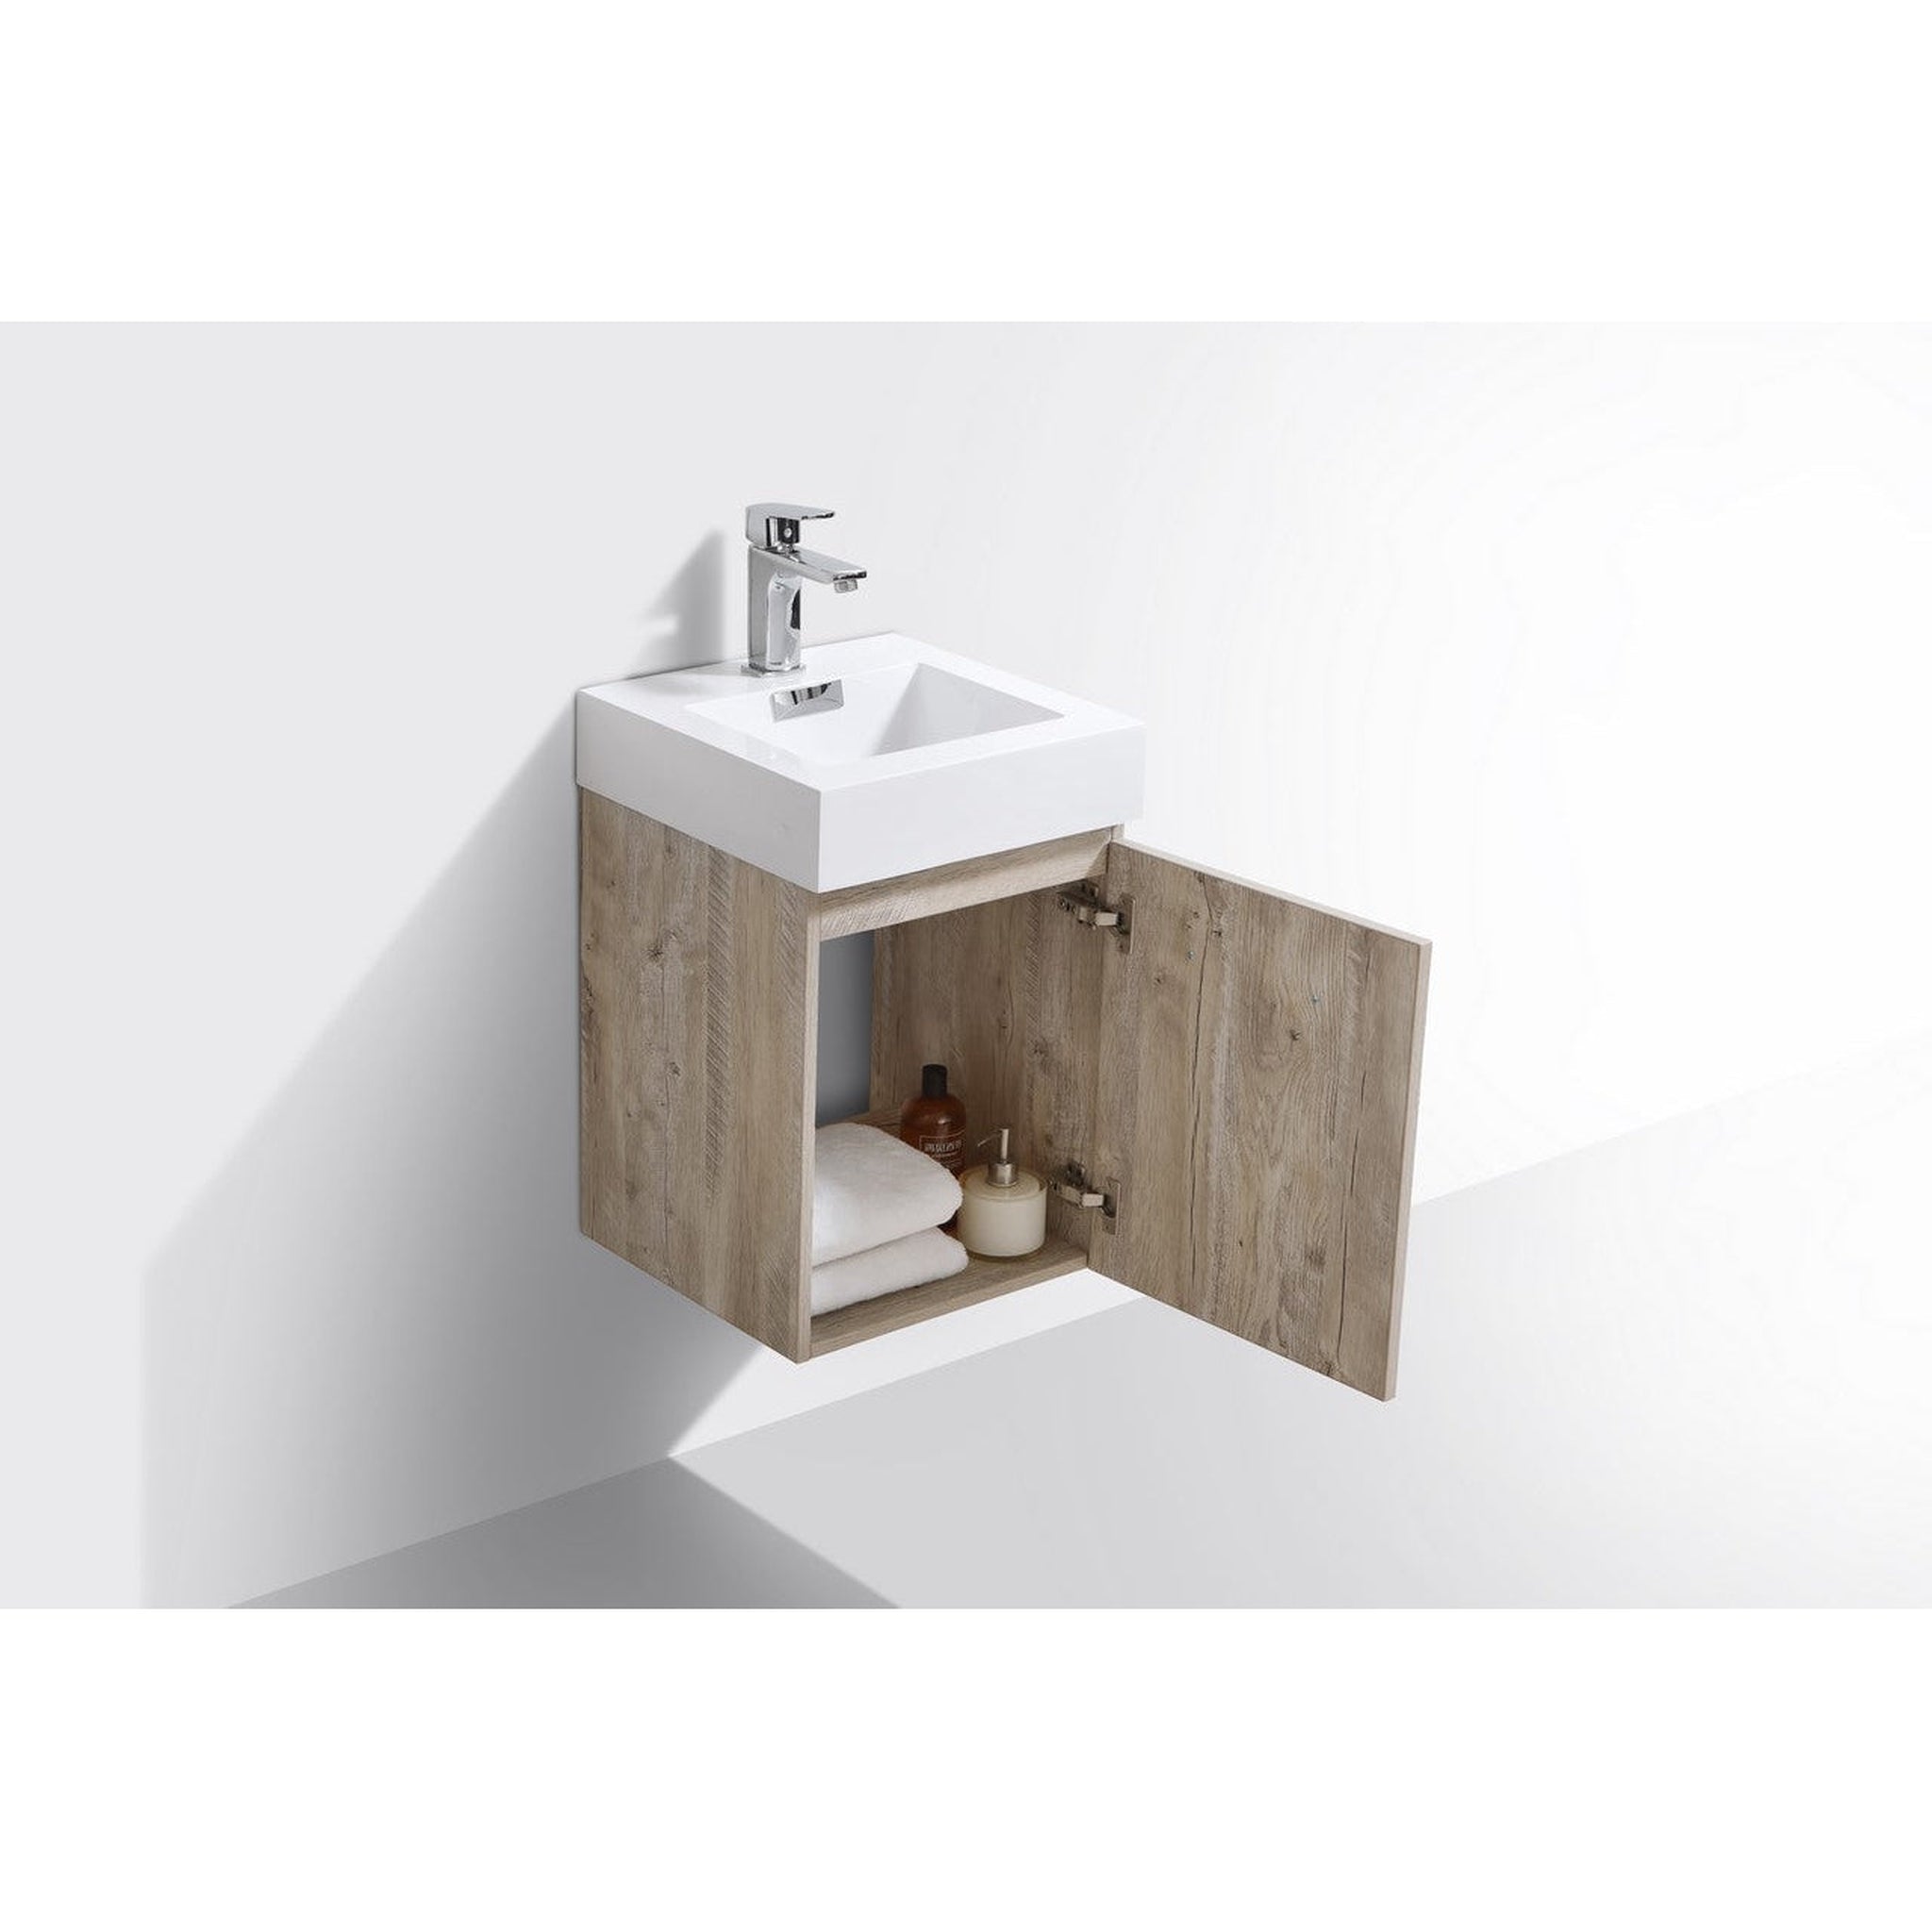 KubeBath, KubeBath Bliss 16" Nature Wood Wall-Mount Modern Bathroom Single Vanity With Integrated Acrylic Sink With Overflow